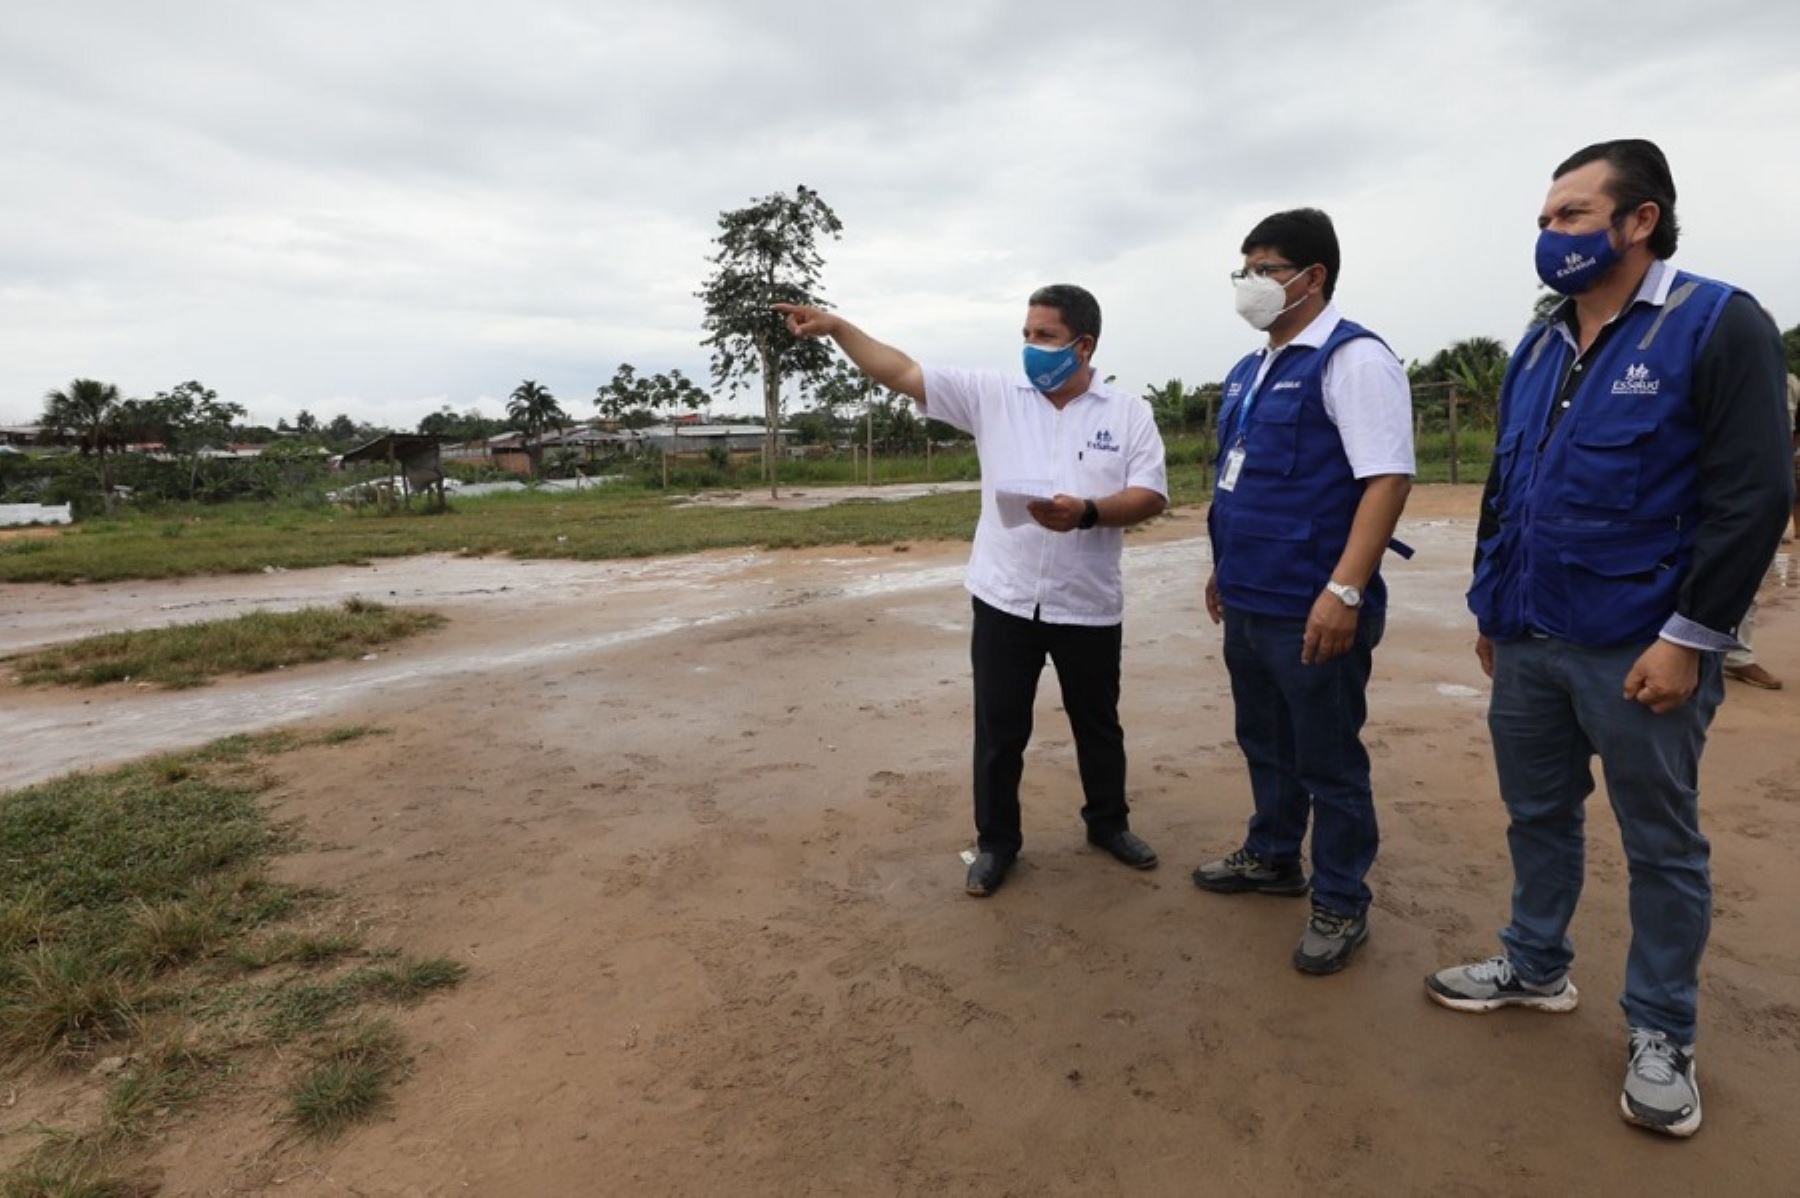 El Seguro Social de Salud invertirá 40 millones de soles para construir un hospital Bicentenario en Yurimaguas, el cual beneficiará a casi 40,000 asegurados de la Red Asistencial Loreto.